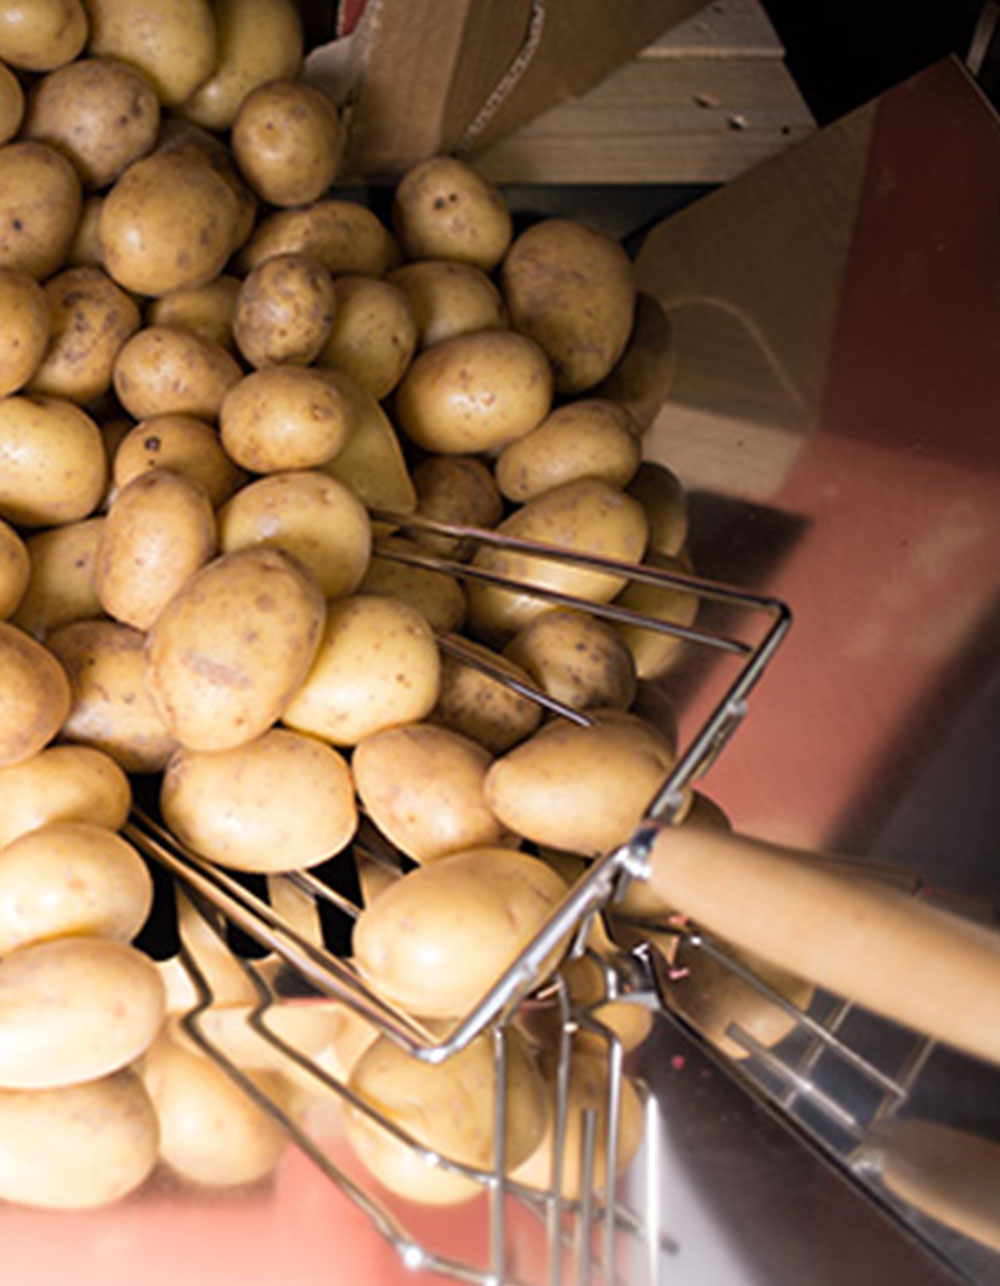 Potato Revolution